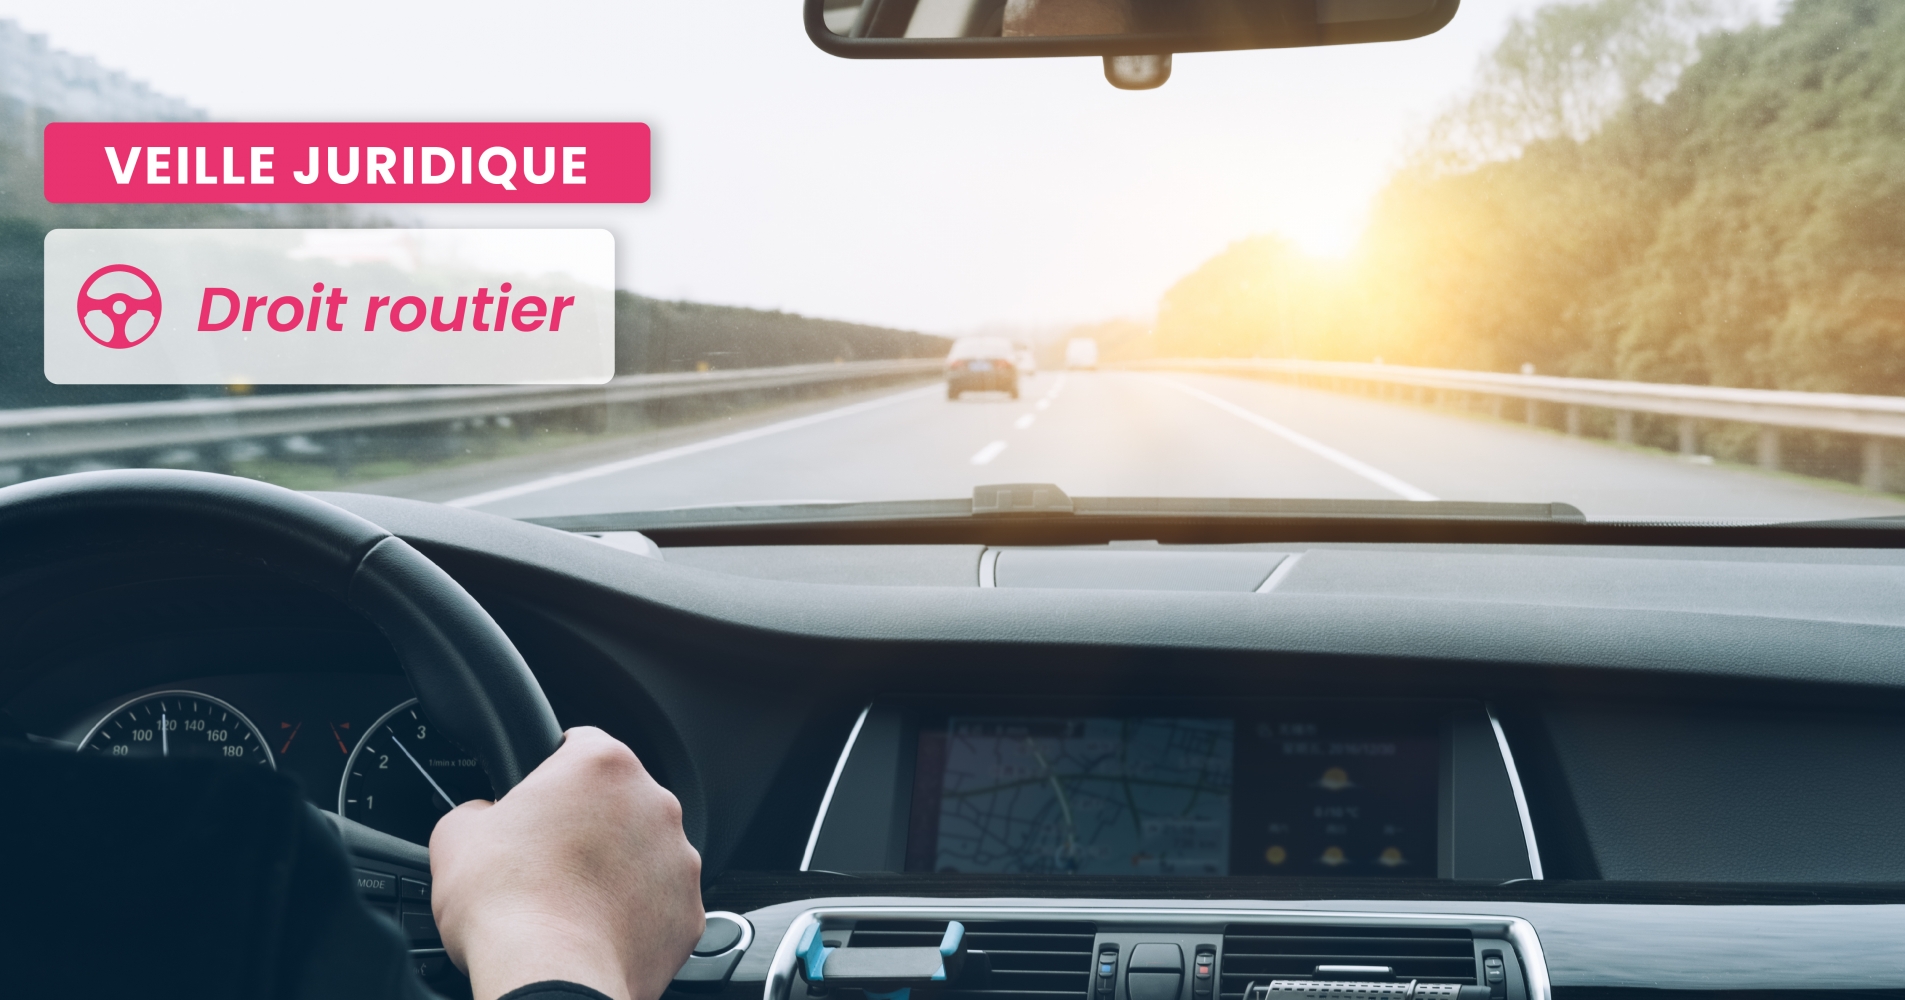 ROUTIER – L’obligation de désigner le conducteur responsable ne cesse que si elle repose sur des faits probants